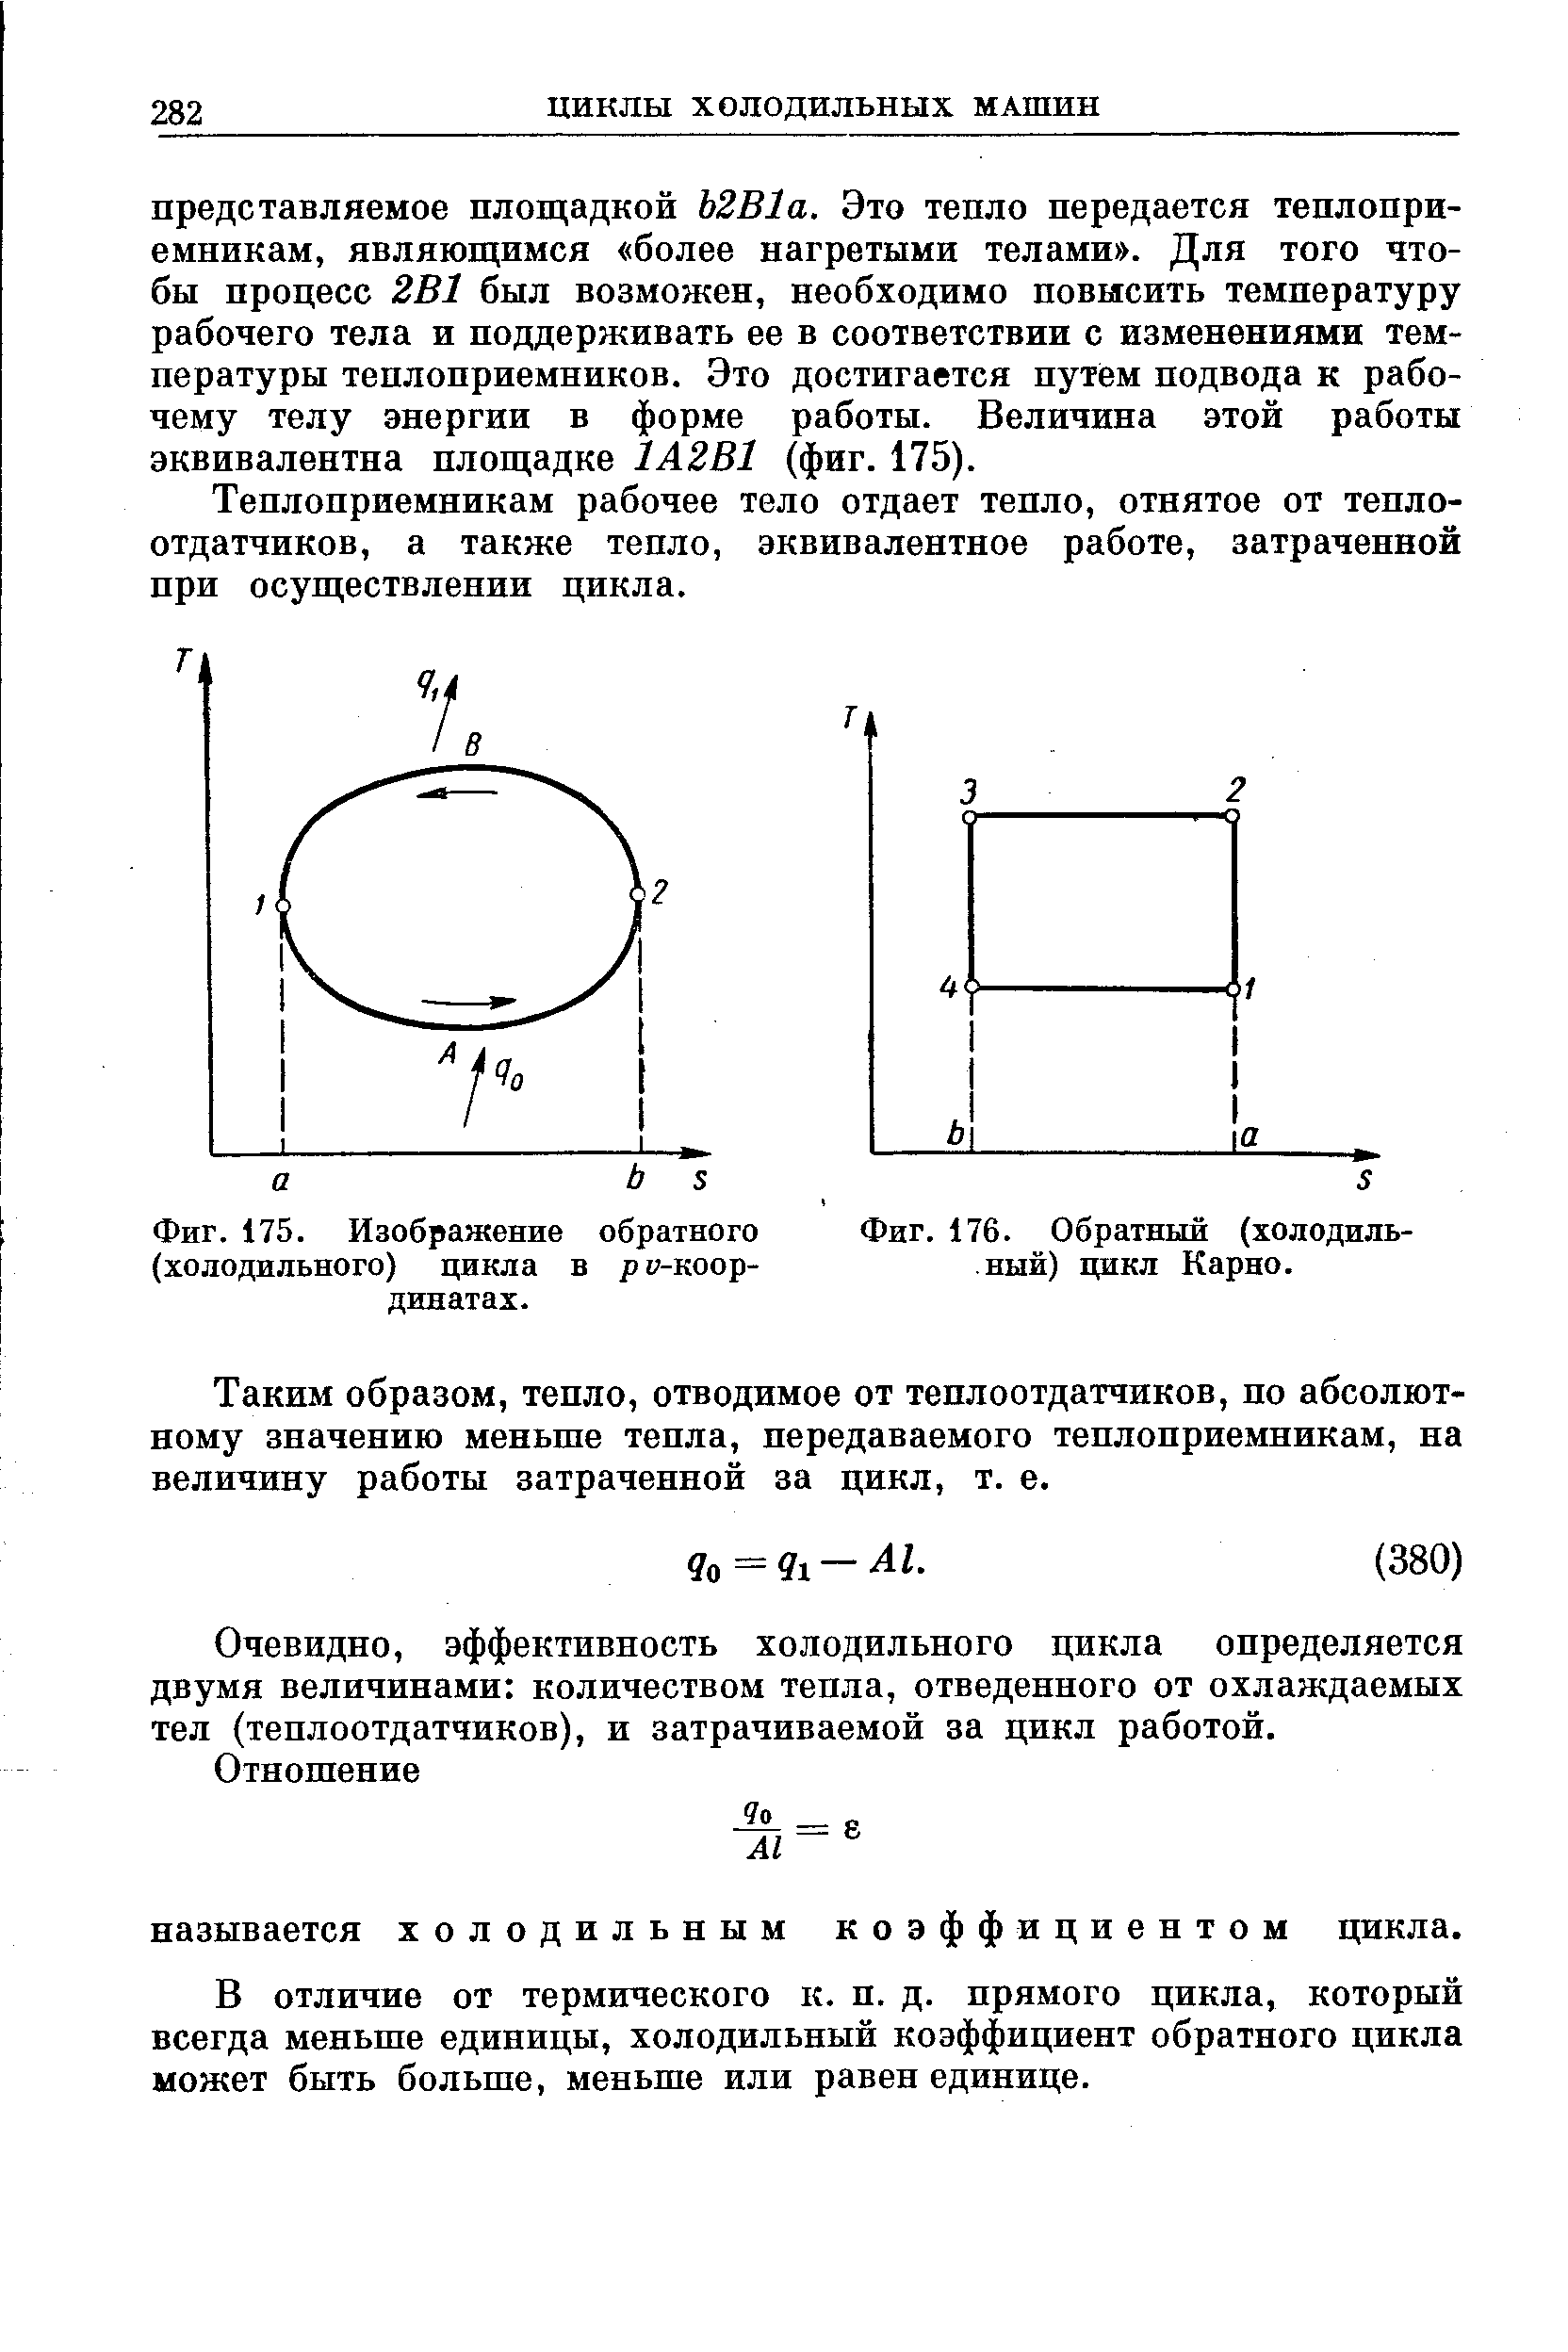 Фиг. 175. Изображение обратного (холодильного) цикла в ру-коор-динатах.
